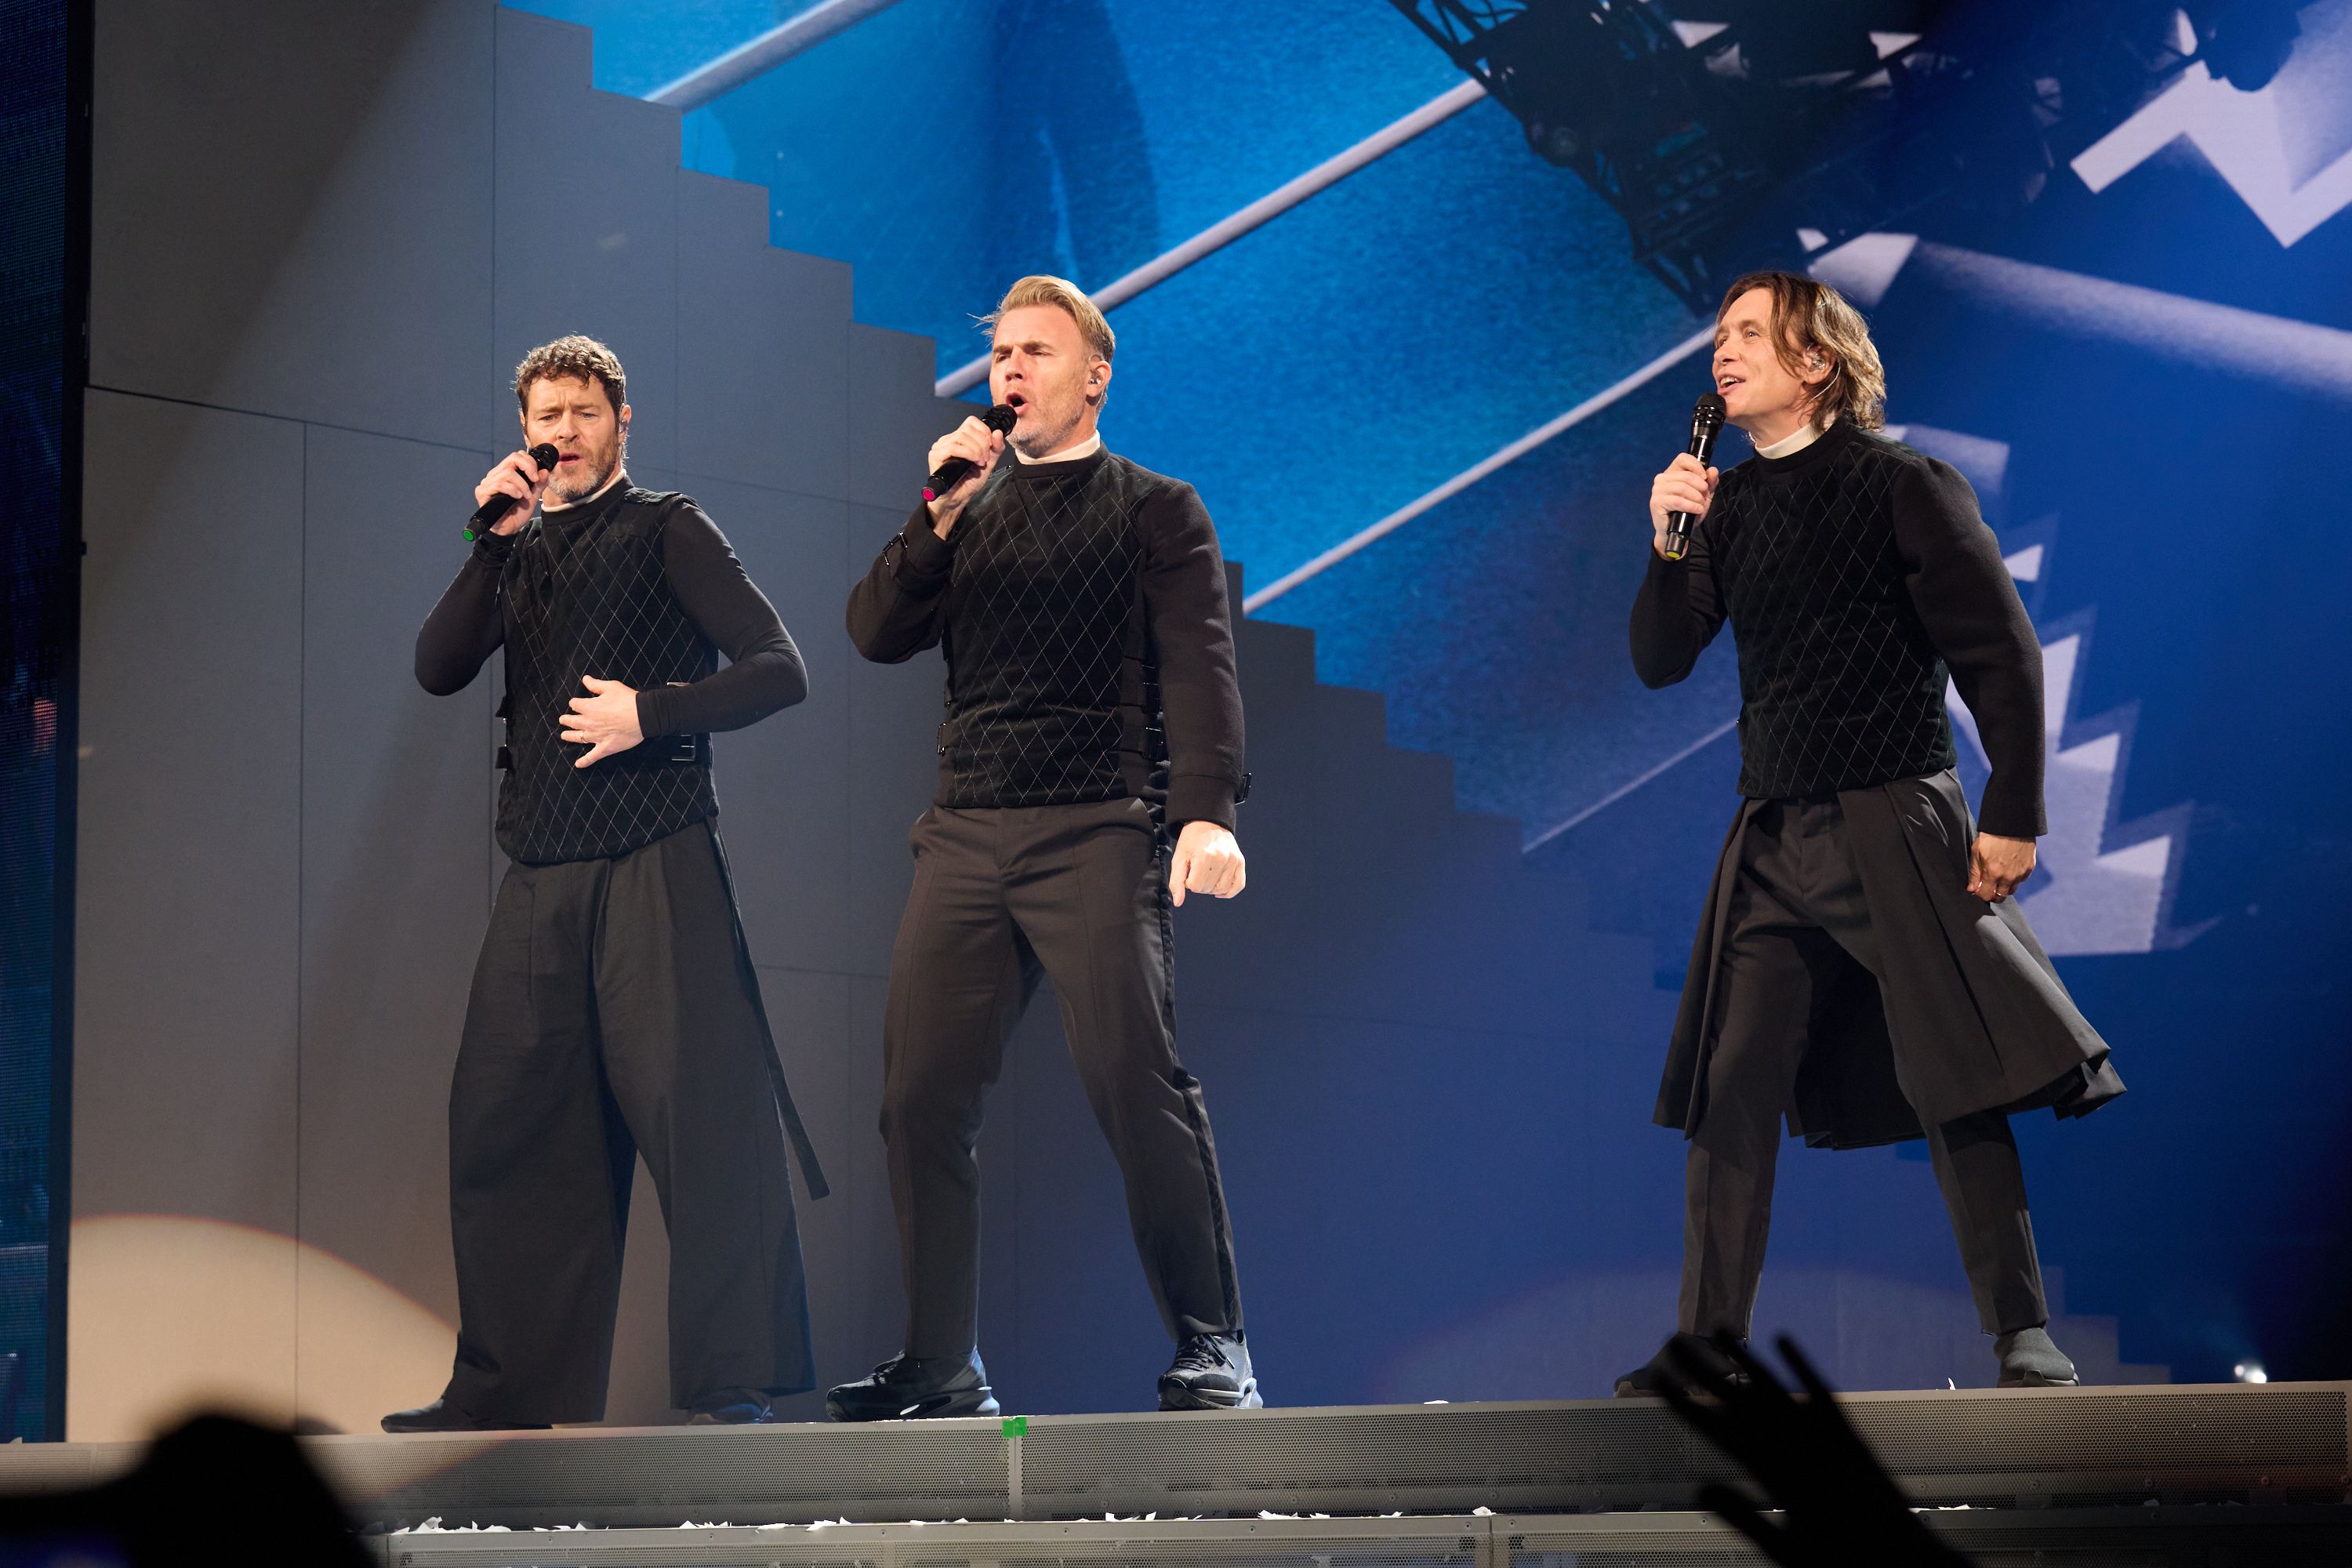 Die Take That-Männer – Howard Donald, Gary Barlow, Mark Owen – sind in der heutigen Show zu sehen